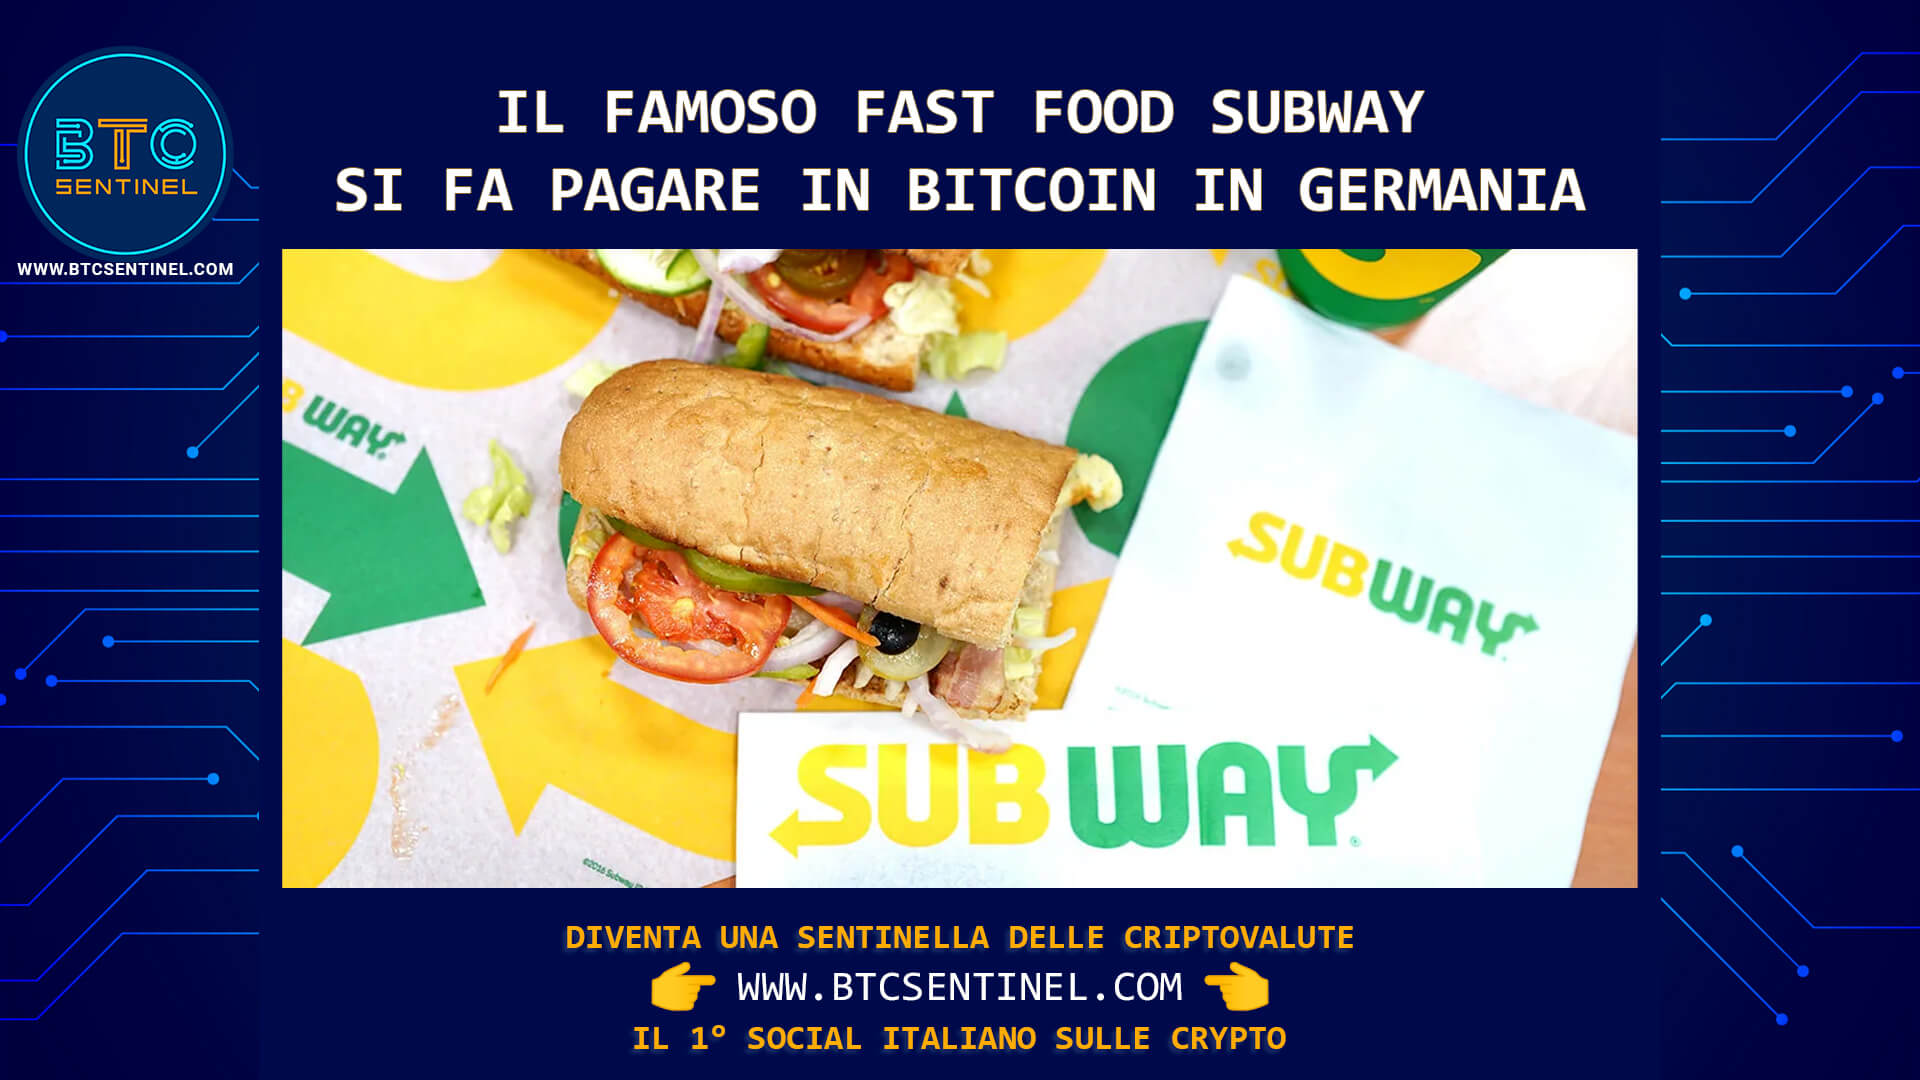 Subway accetta Bitcoin: la catena di ristoranti fast food in franchising permette di pagare sandwich in BTC